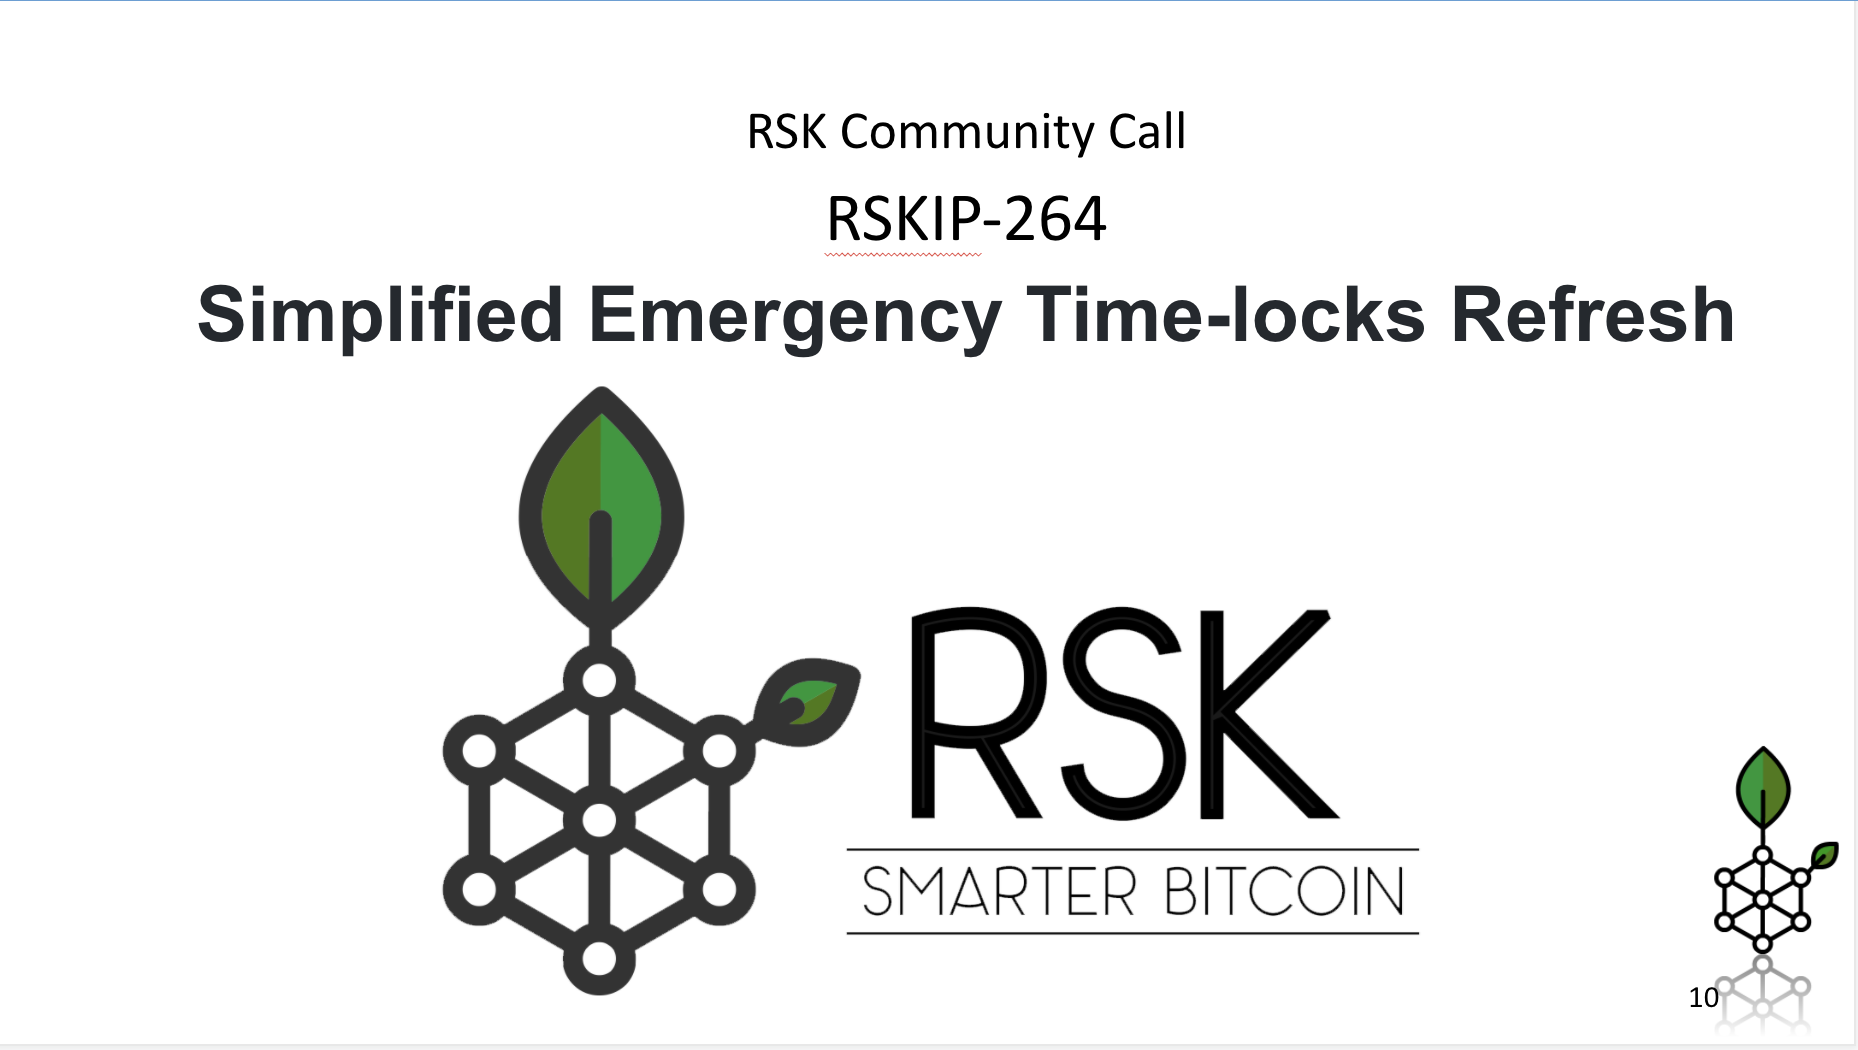 Simplified Emergency Time-locks Refresh